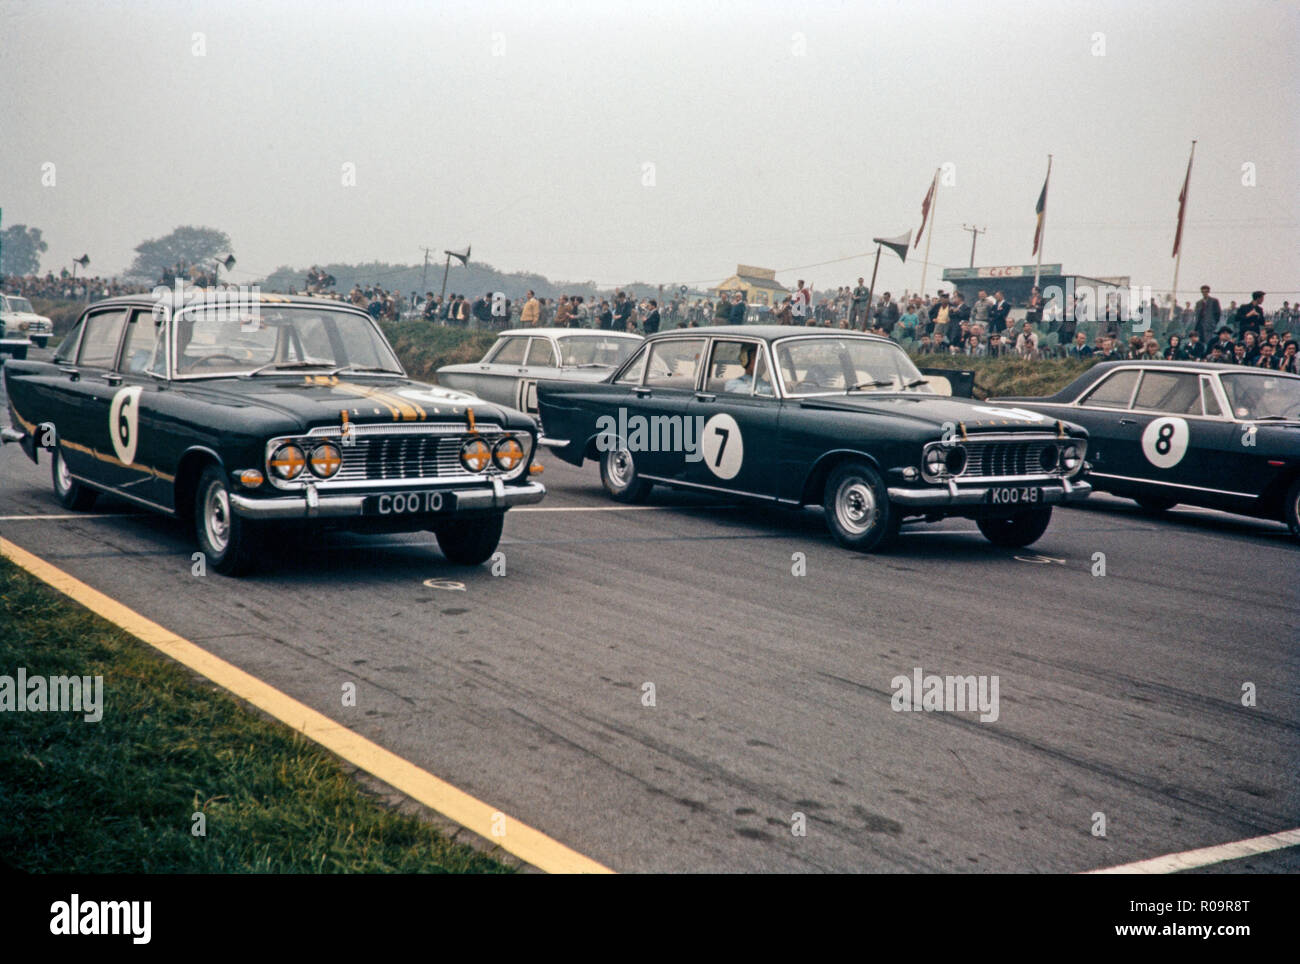 La course automobile au circuit de Brands Hatch en Angleterre au début des années 1960. Montré sont deux voitures Ford Zodiac, numéro 6 et 7. Photo de la grille de départ, juste avant le départ de la course. Banque D'Images